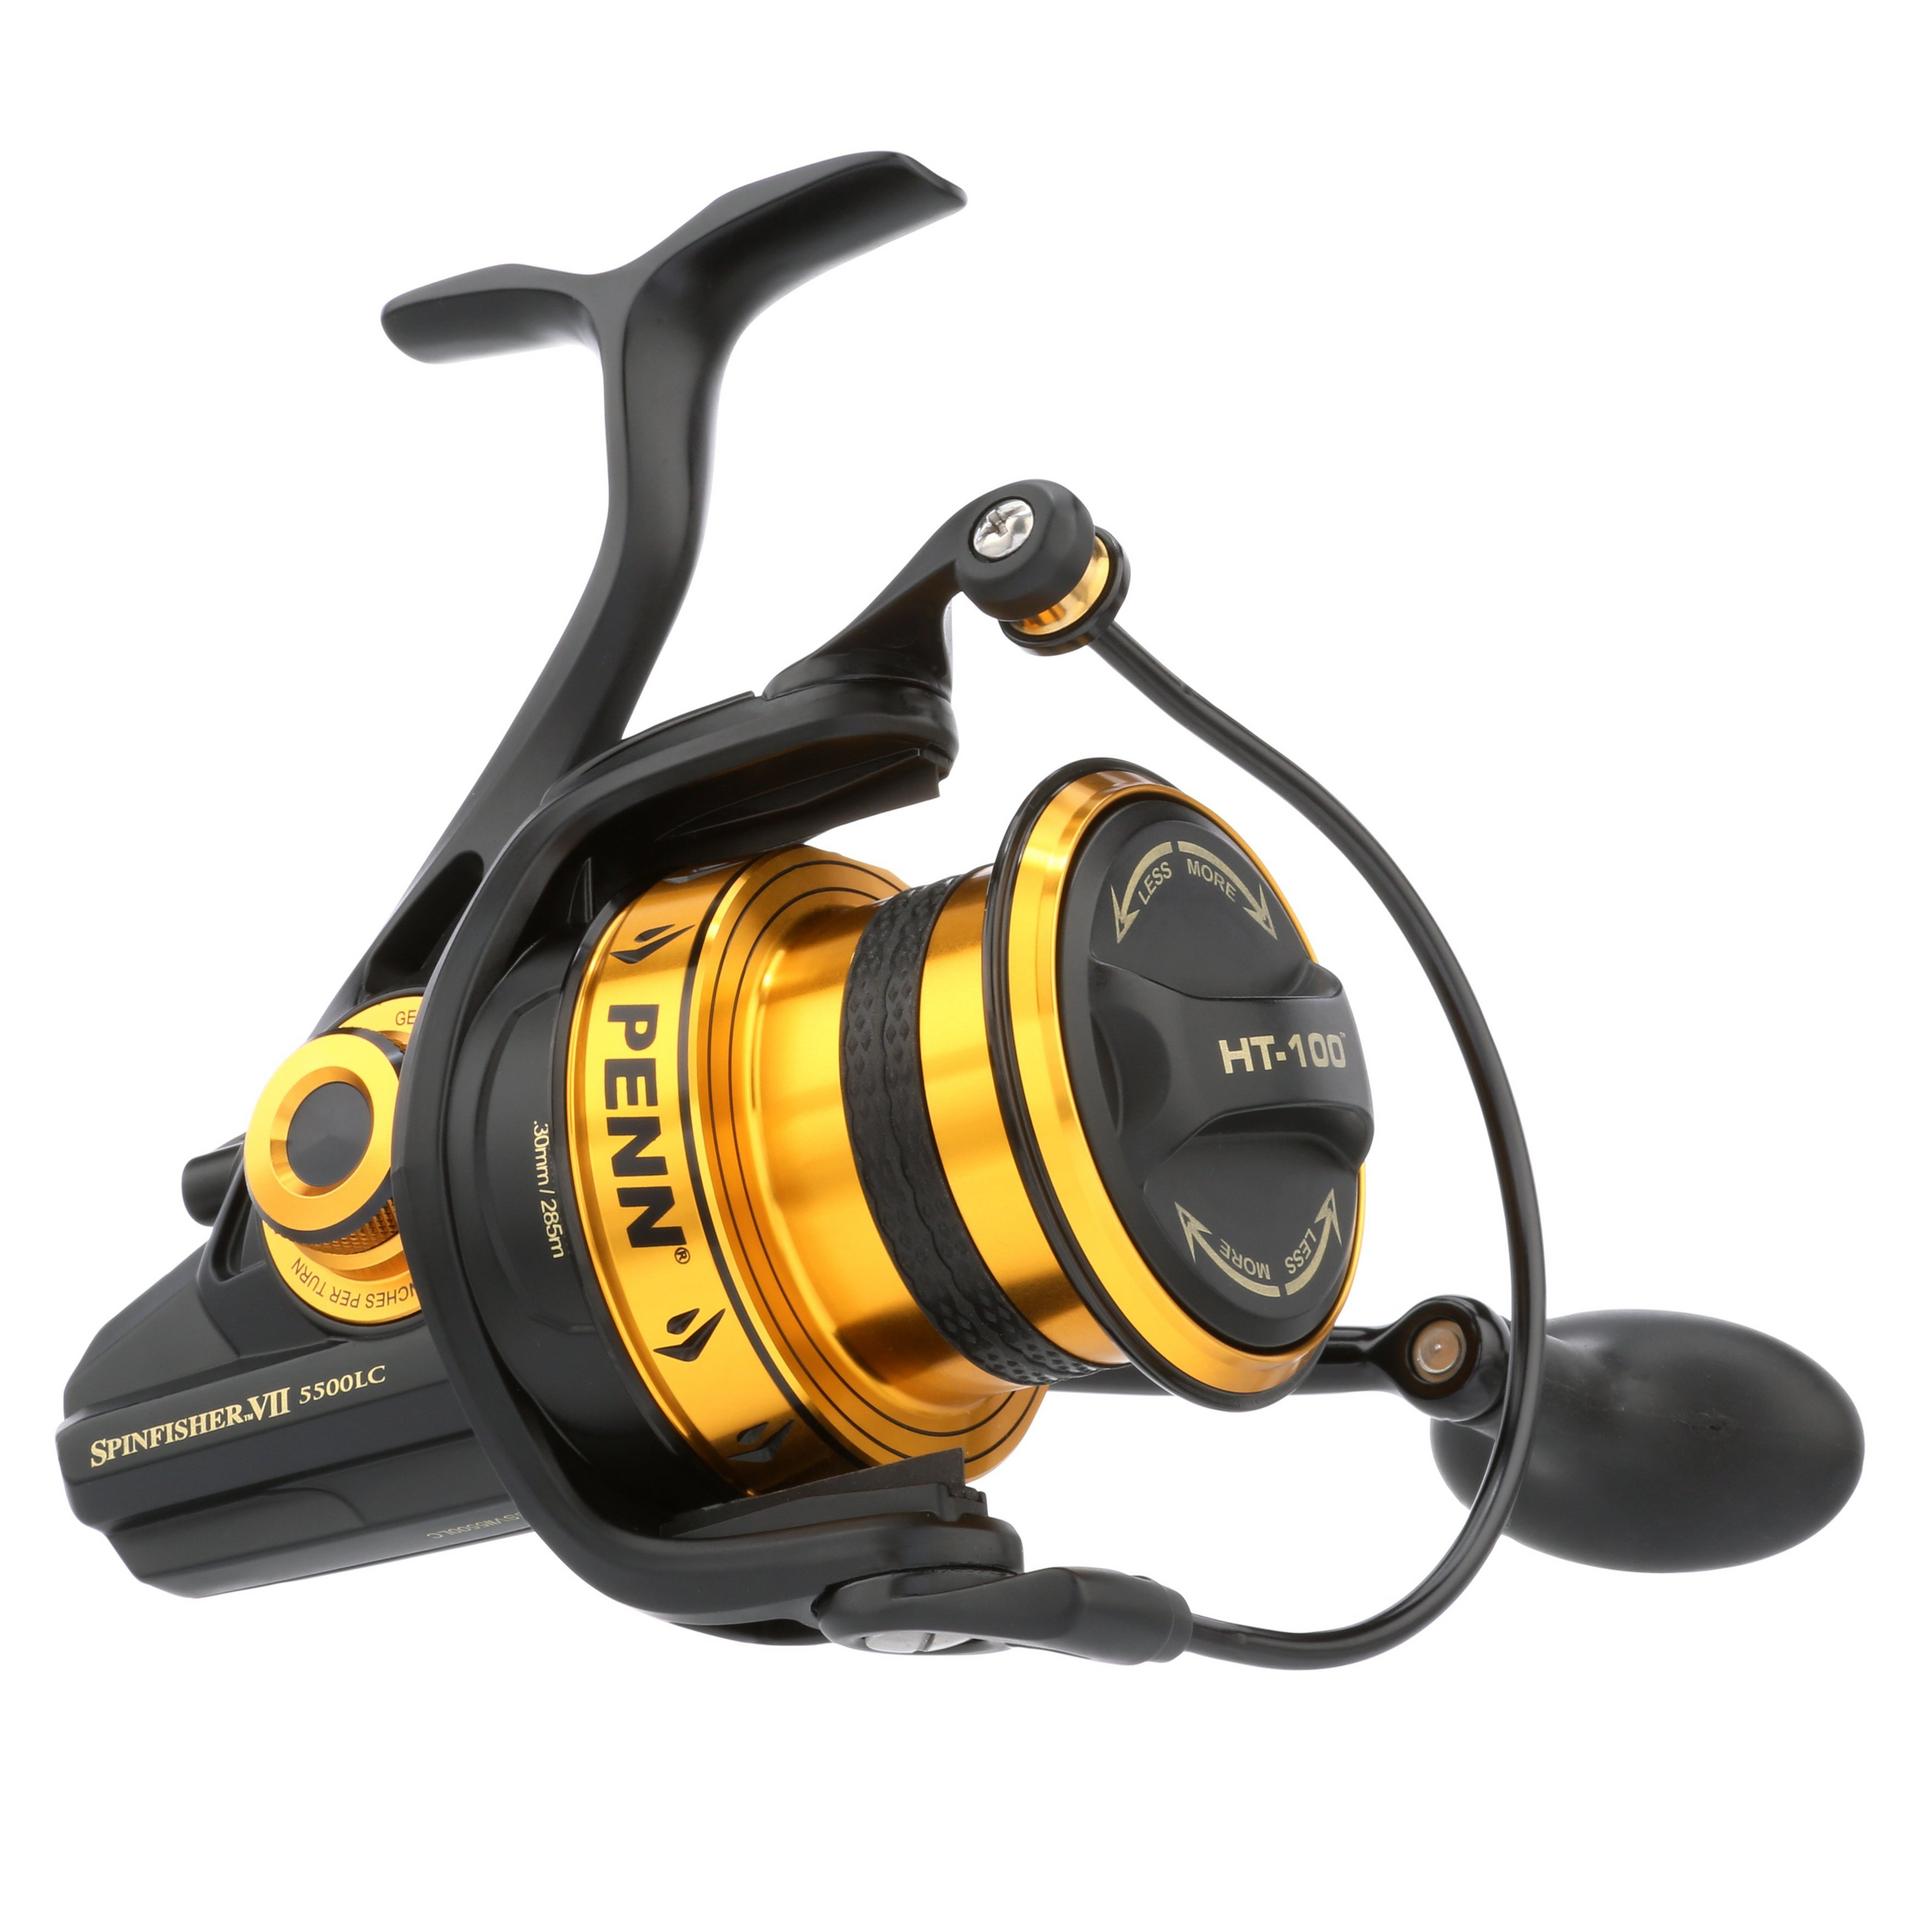 Penn Spinning Reel Fishing Reel Reel Covers Equipment for sale